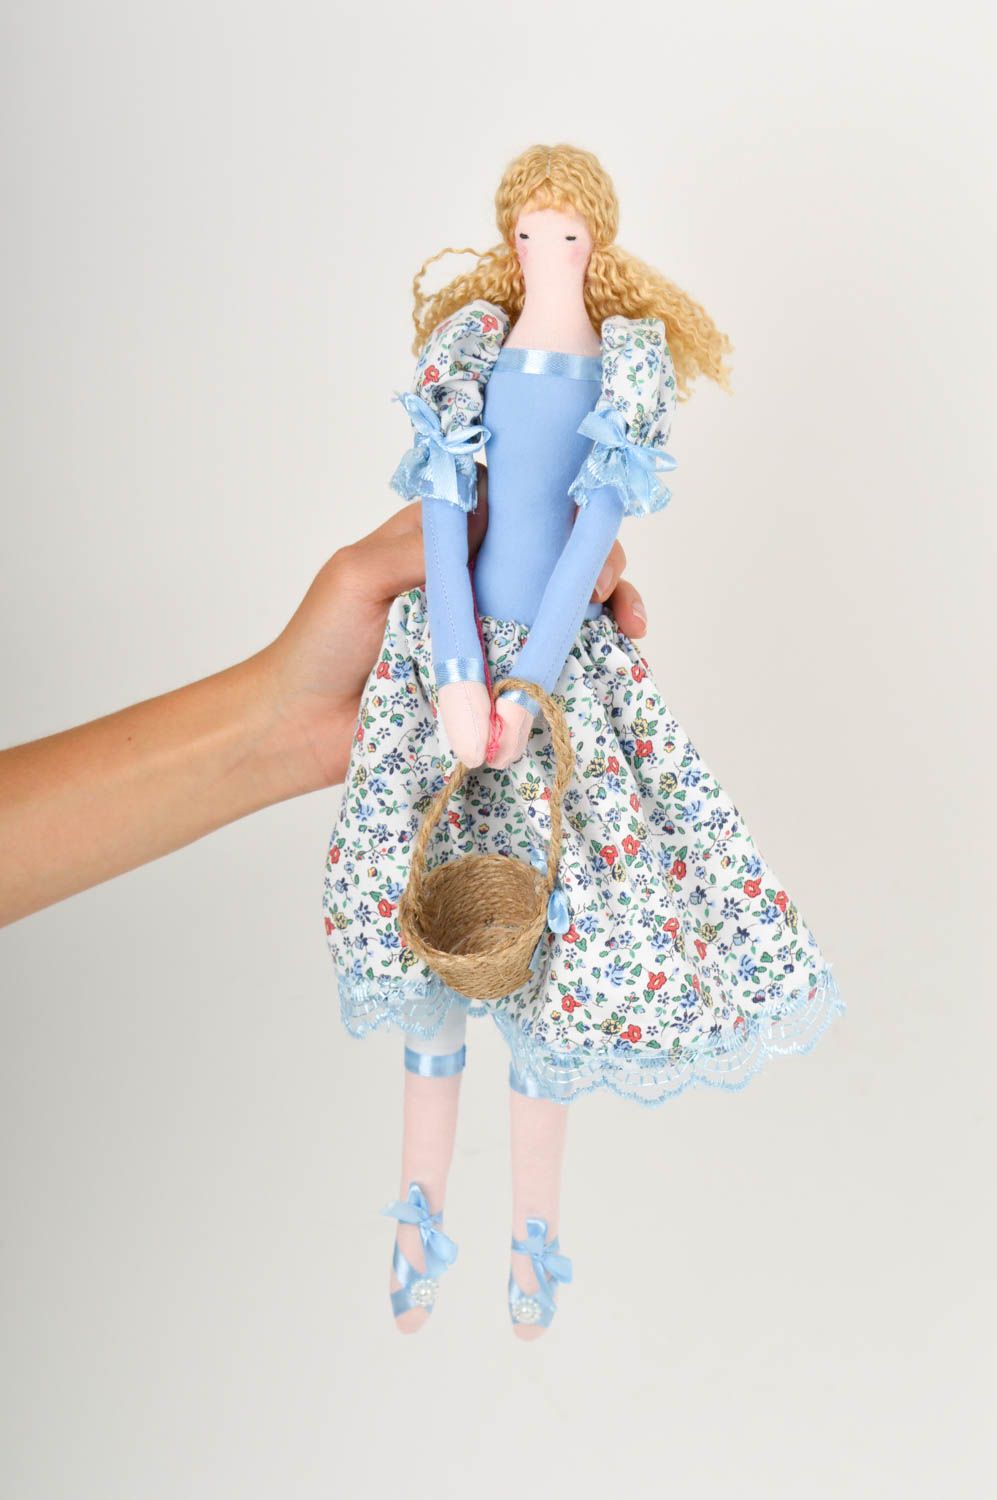 Handmade lockige Designer Puppe Stoff Spielzeug künstlerische schöne Puppe foto 2